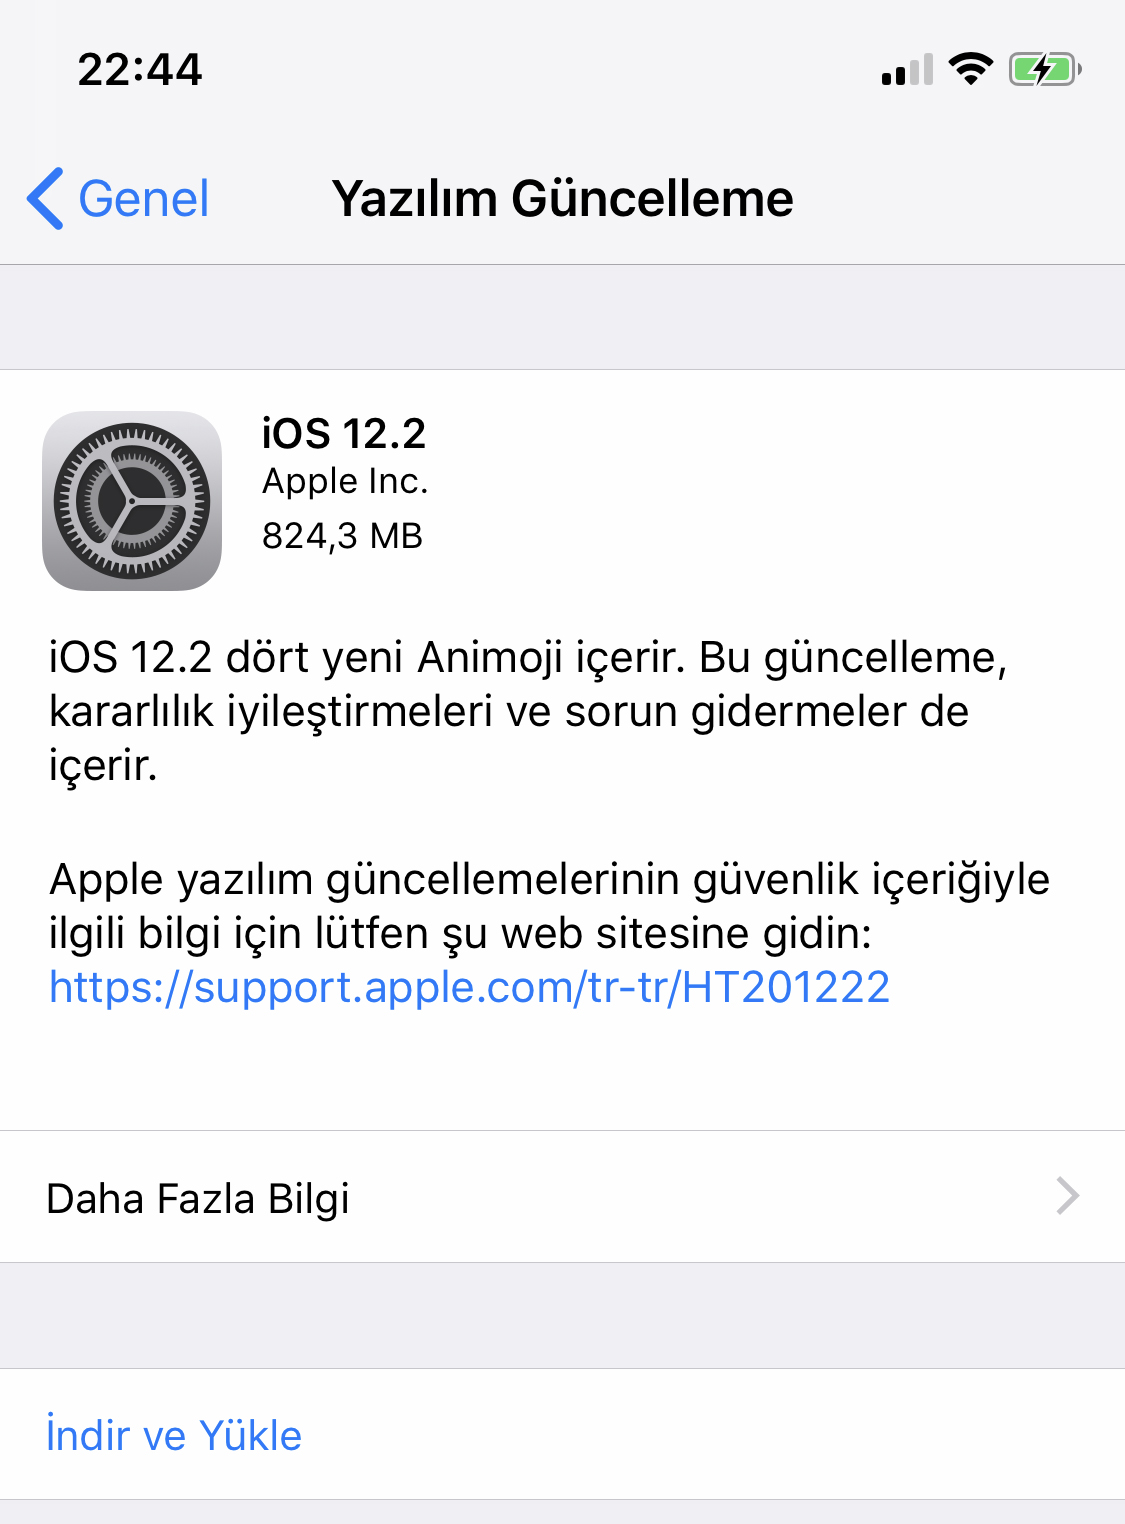 iOS 12.2 yayınlandı! iOS 12.2 neler sunuyor?